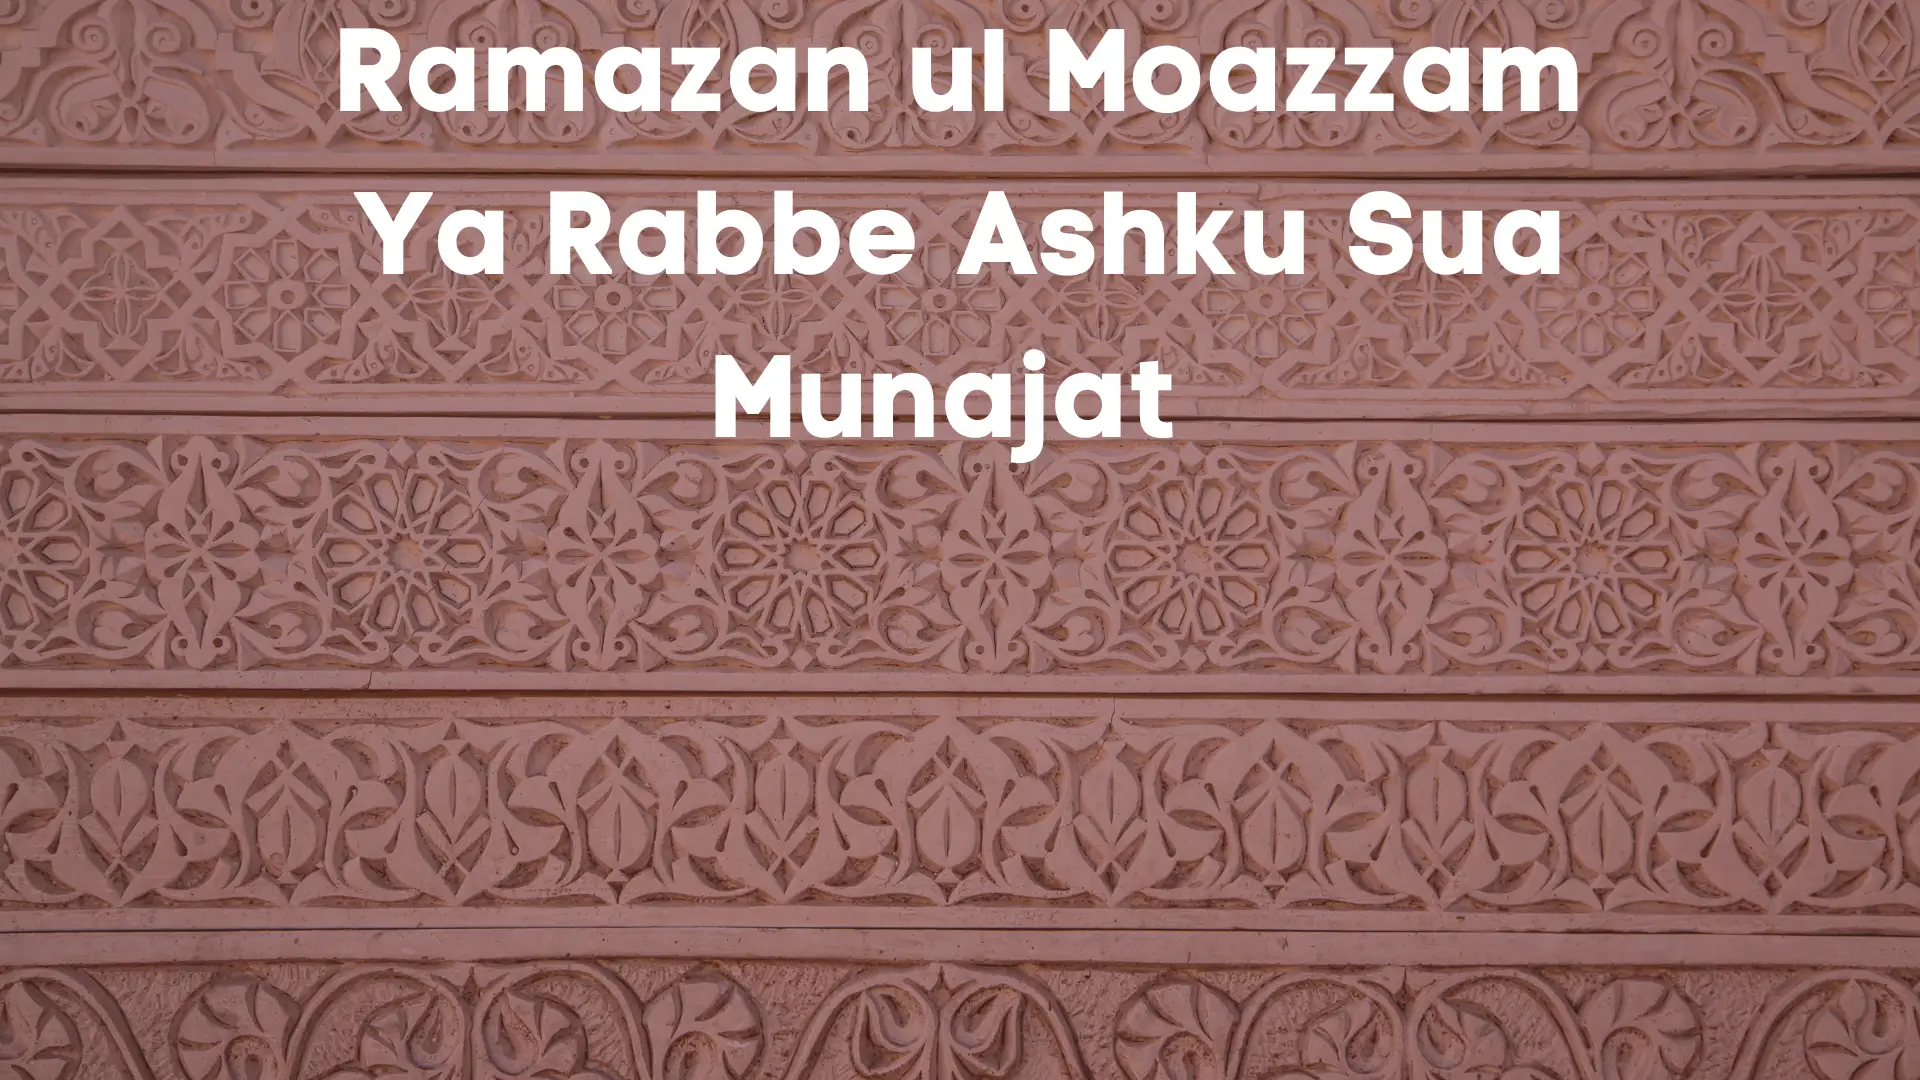 Ramazan ul Moazzam Ya Rabbe Ashku Sua Munajat